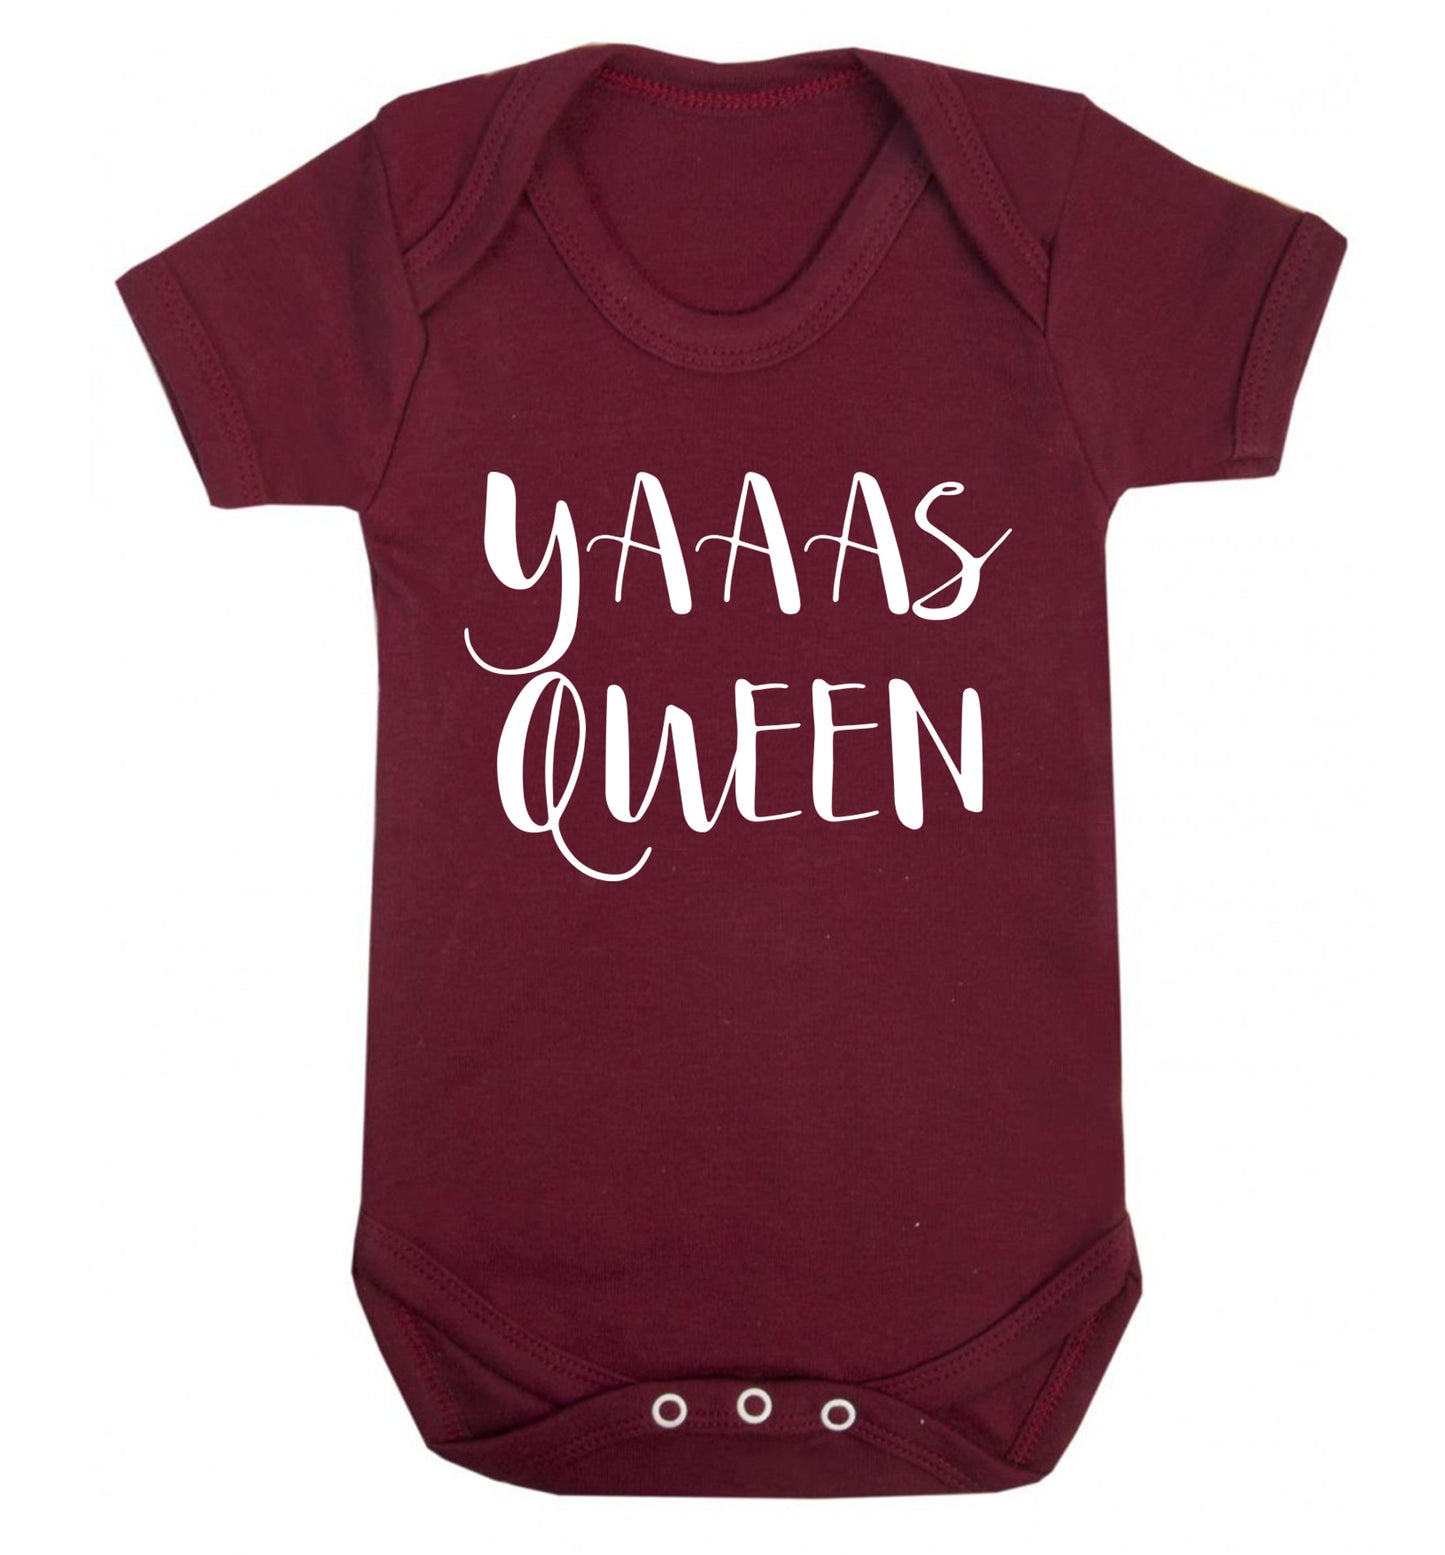 Yas Queen Baby Vest maroon 18-24 months